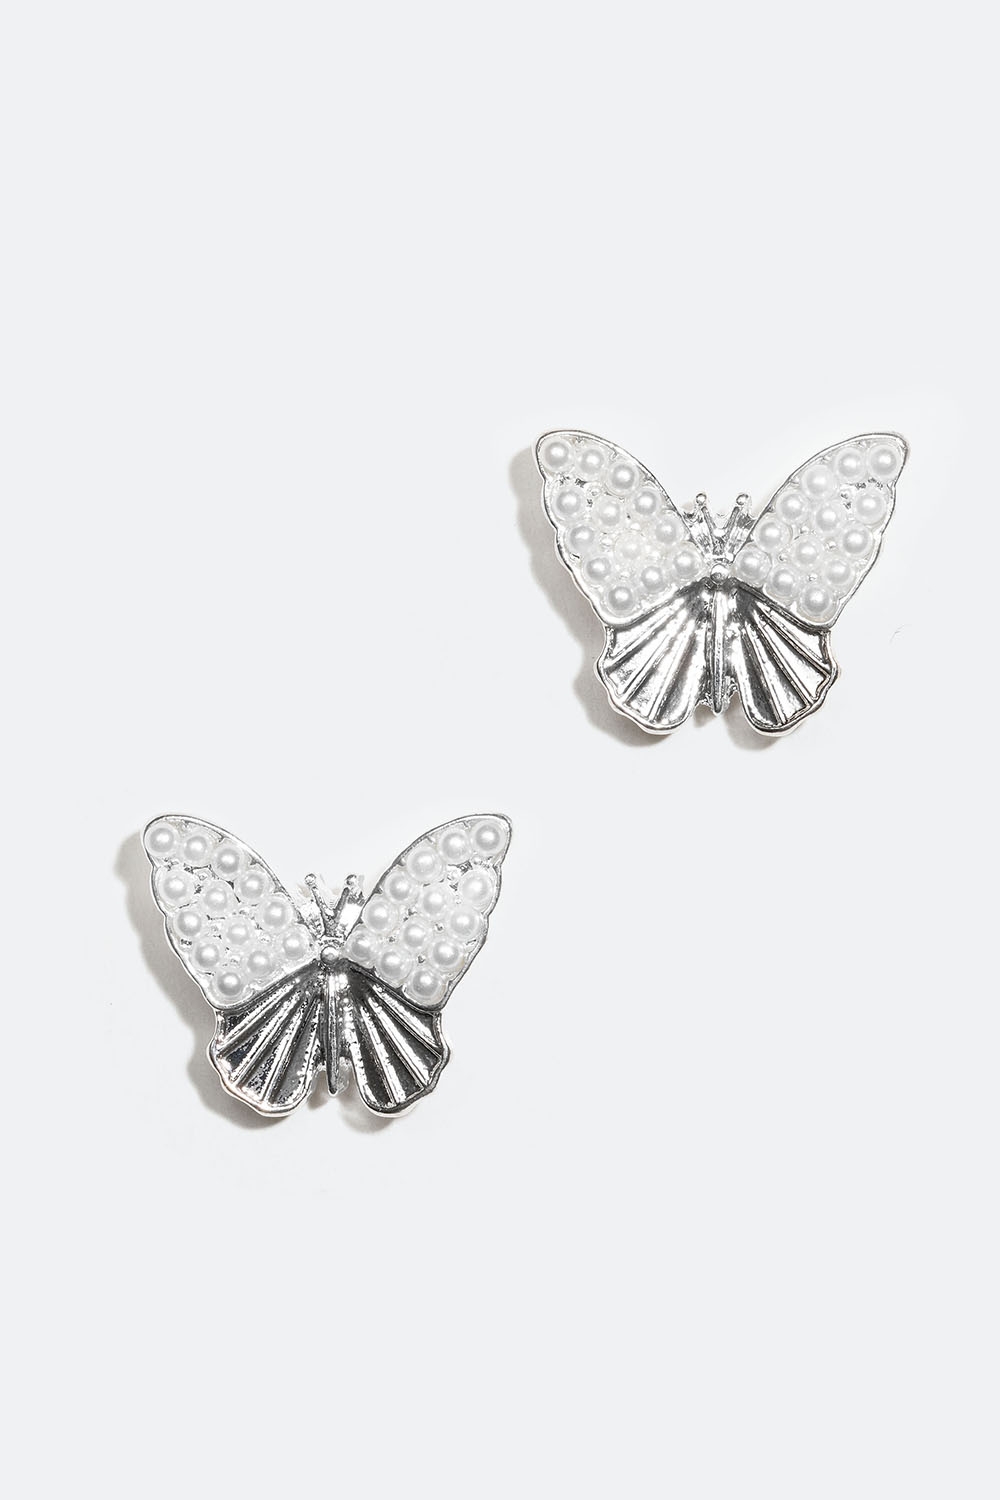 Nappikorvakorut, joissa perhosia ja helmiä ryhmässä Korut / Korvakorut / Nappikorvakorut @ Glitter (253005731001)